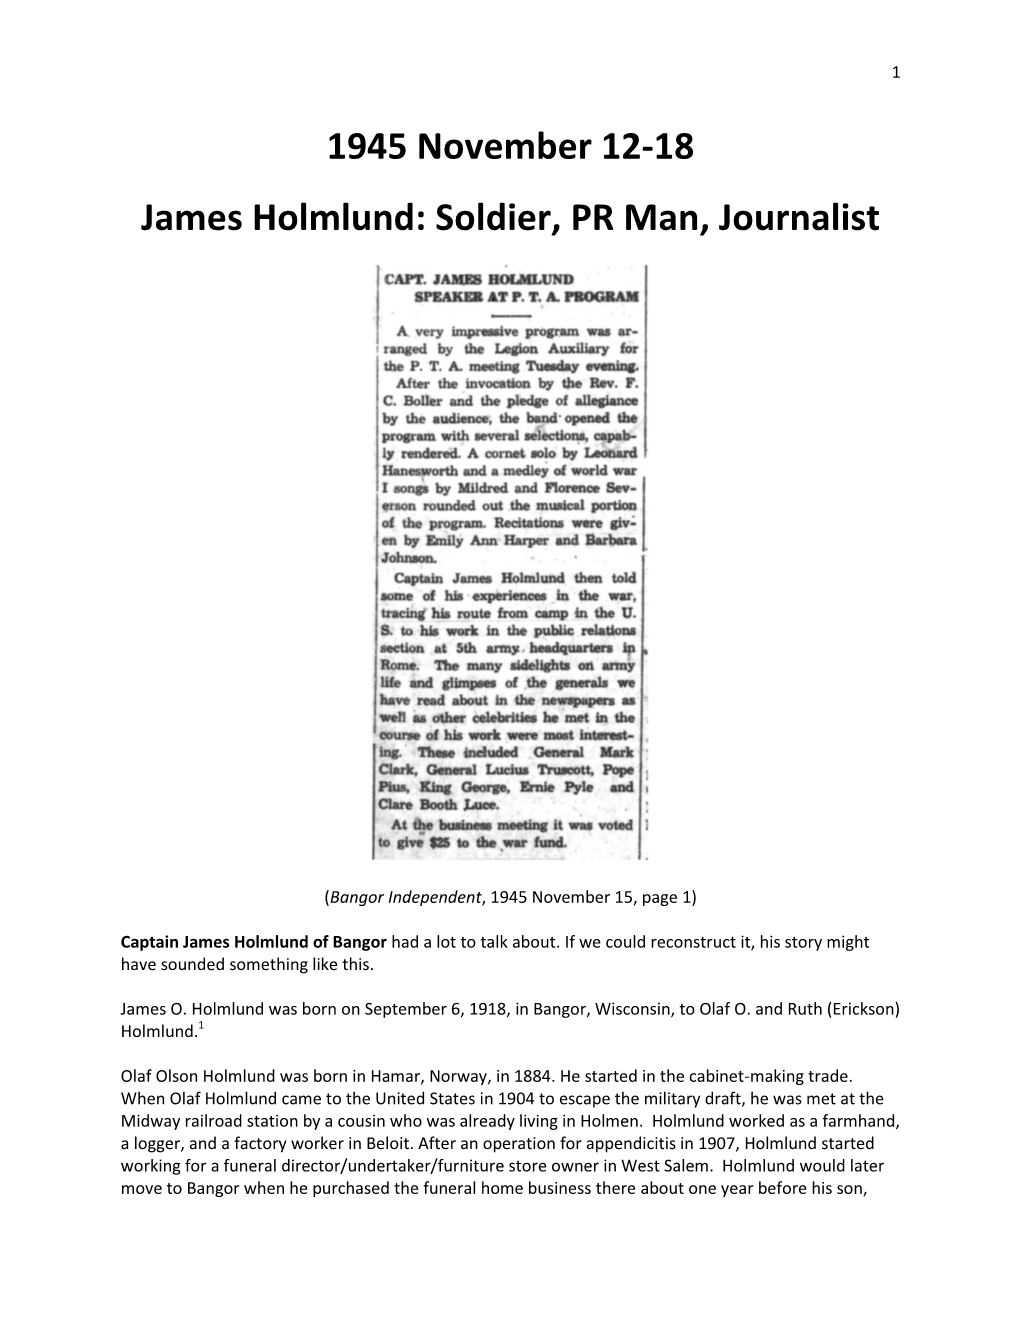 Soldier, PR Man, Journalist